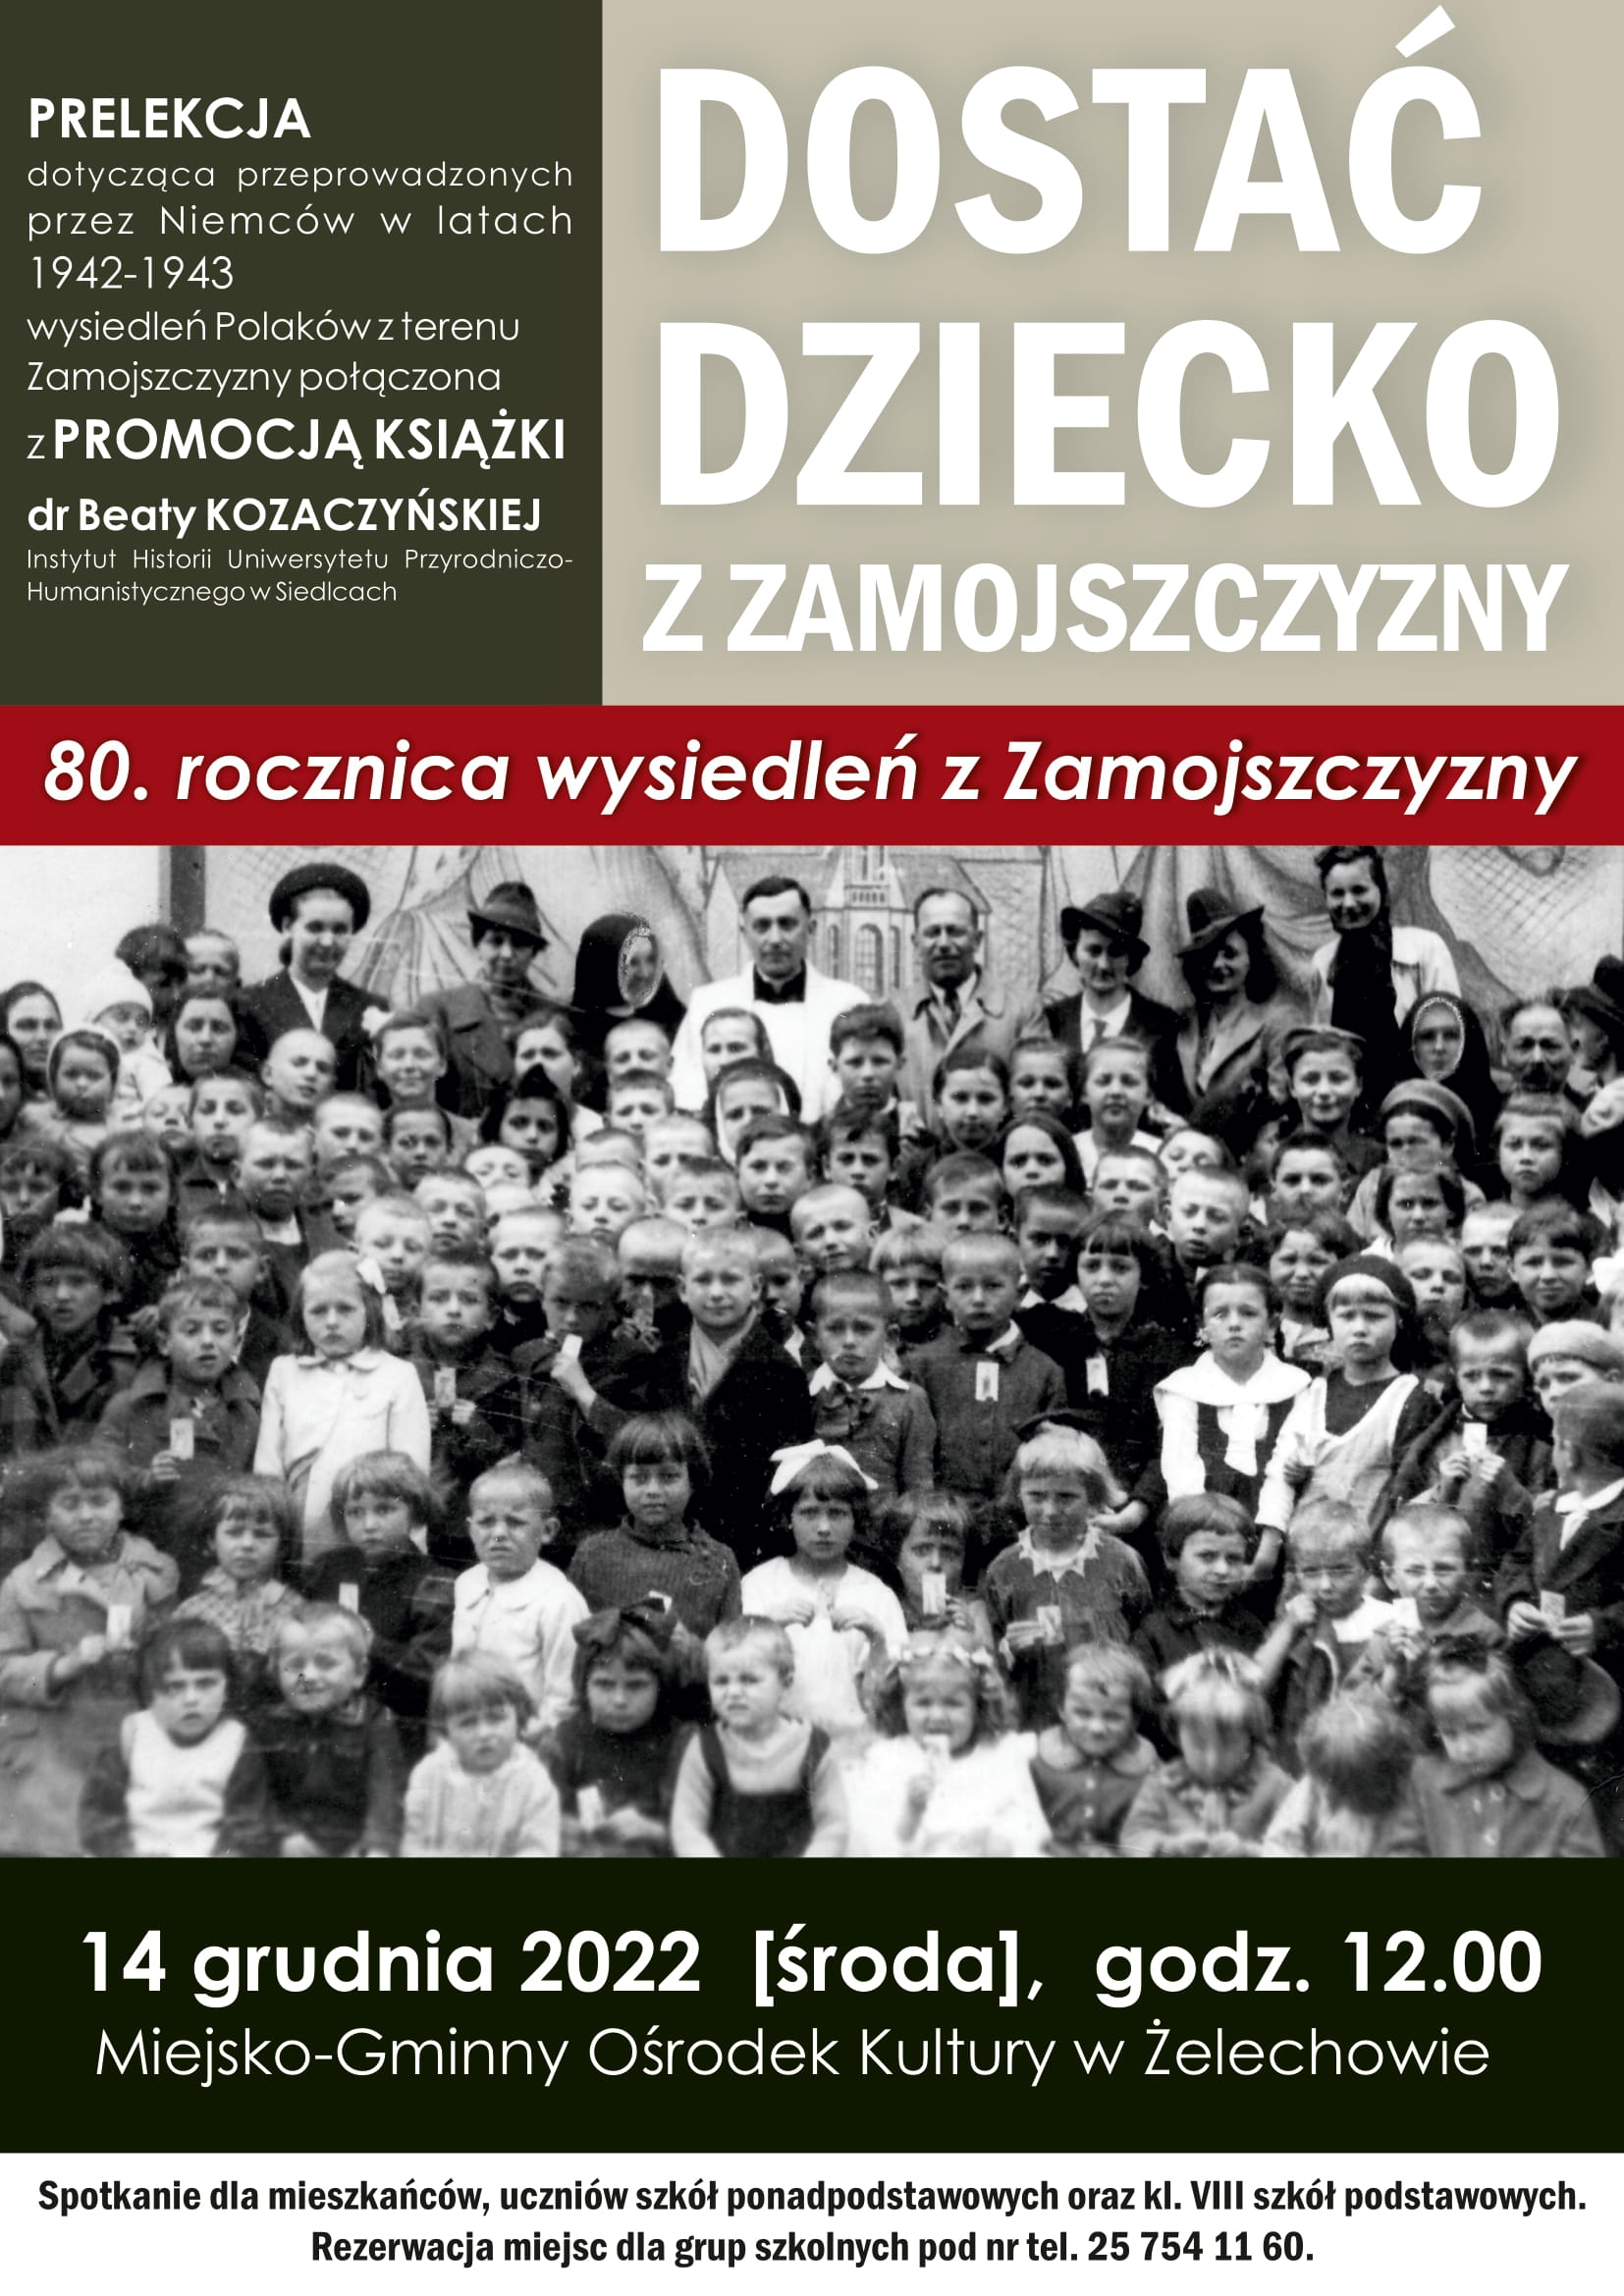 Miniaturka artykułu 80. rocznica przybycia do Żelechowa wysiedlonych przez Niemców mieszkańców Zamojszczyzny